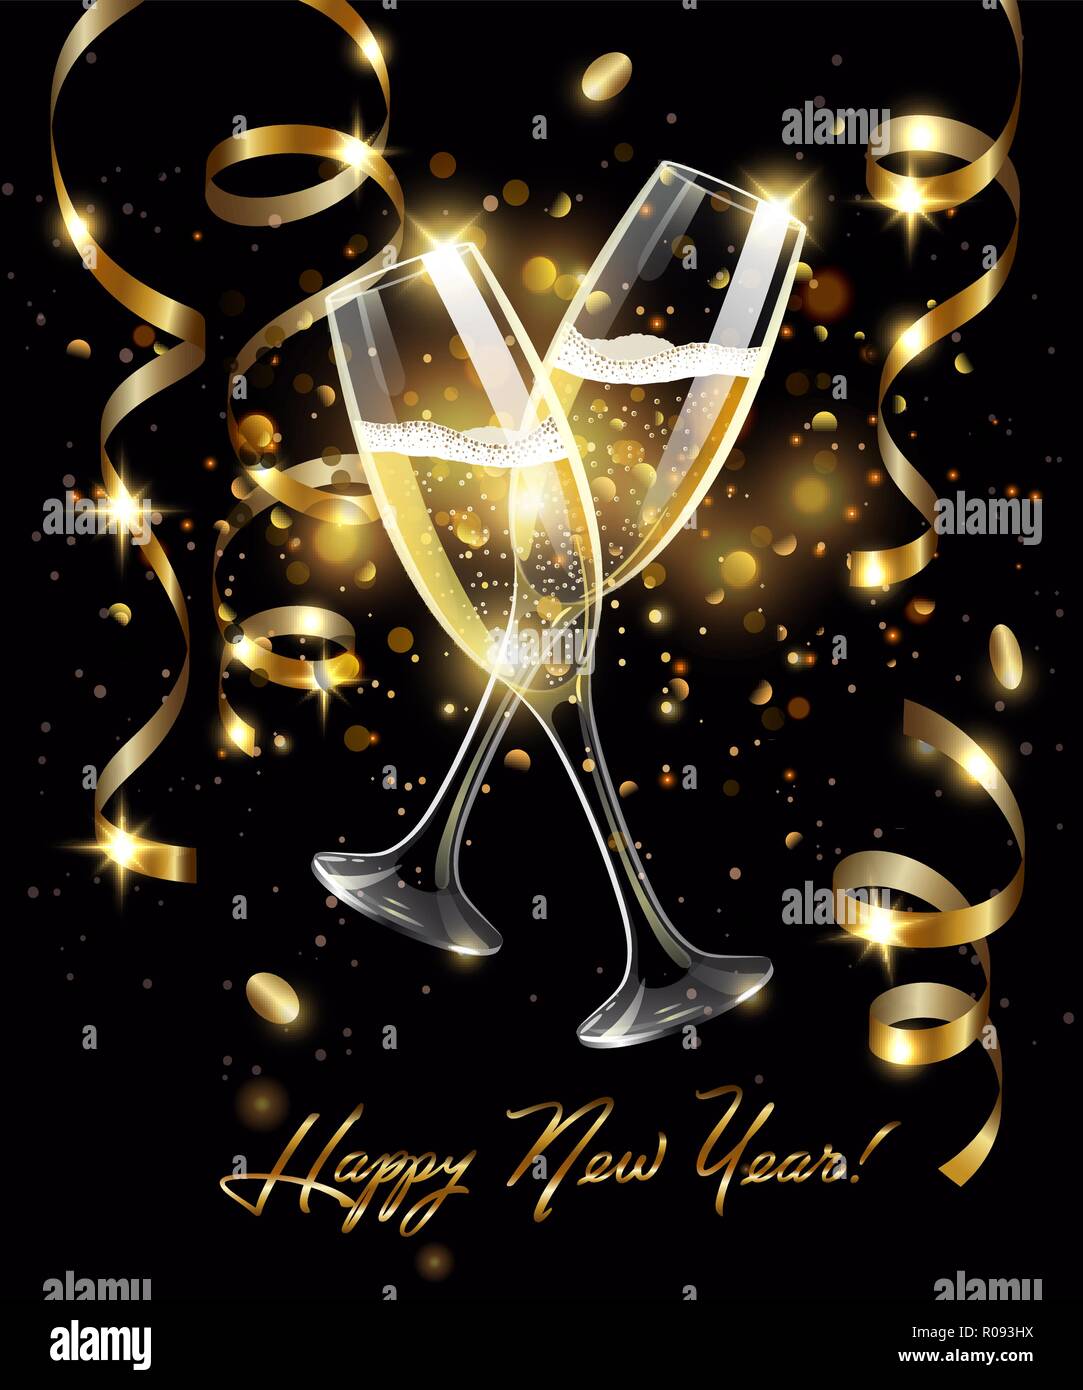 Funkelnde Gläser Champagner mit Gold Serpentine auf schwarzem Hintergrund, bokeh Effect mit Vorzeichen Frohes Neues Jahr Stock Vektor